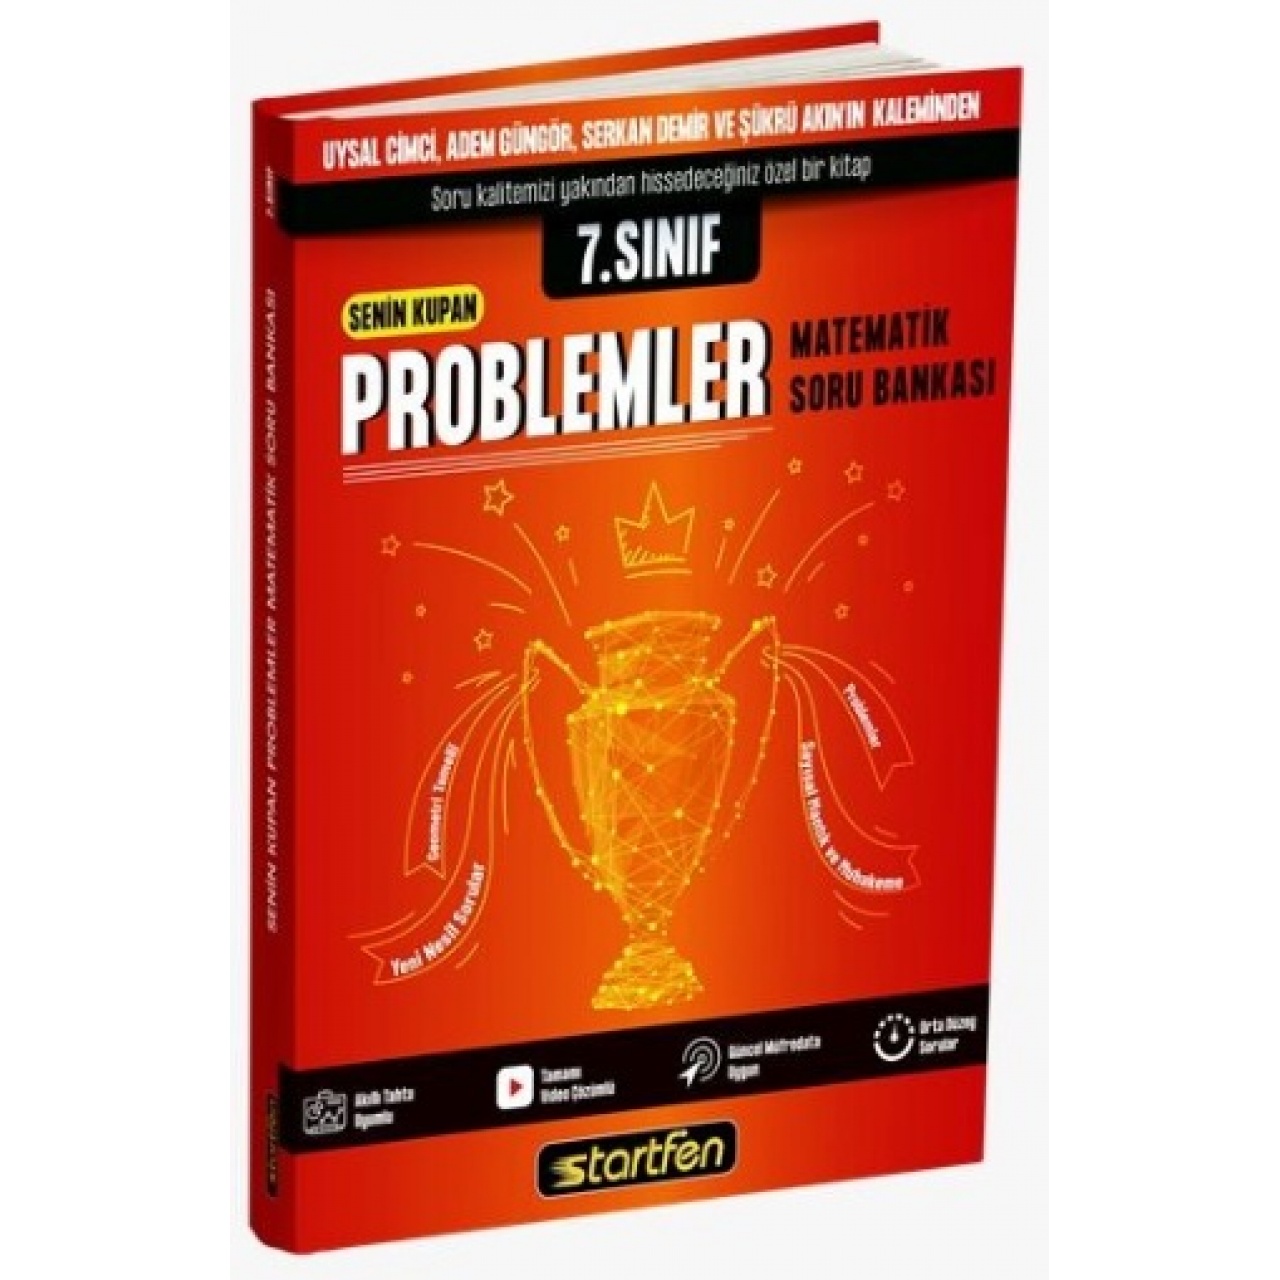 7. Sınıf Senin Kupan Problemler Matematik Soru Bankası Startfen Yayıncılık